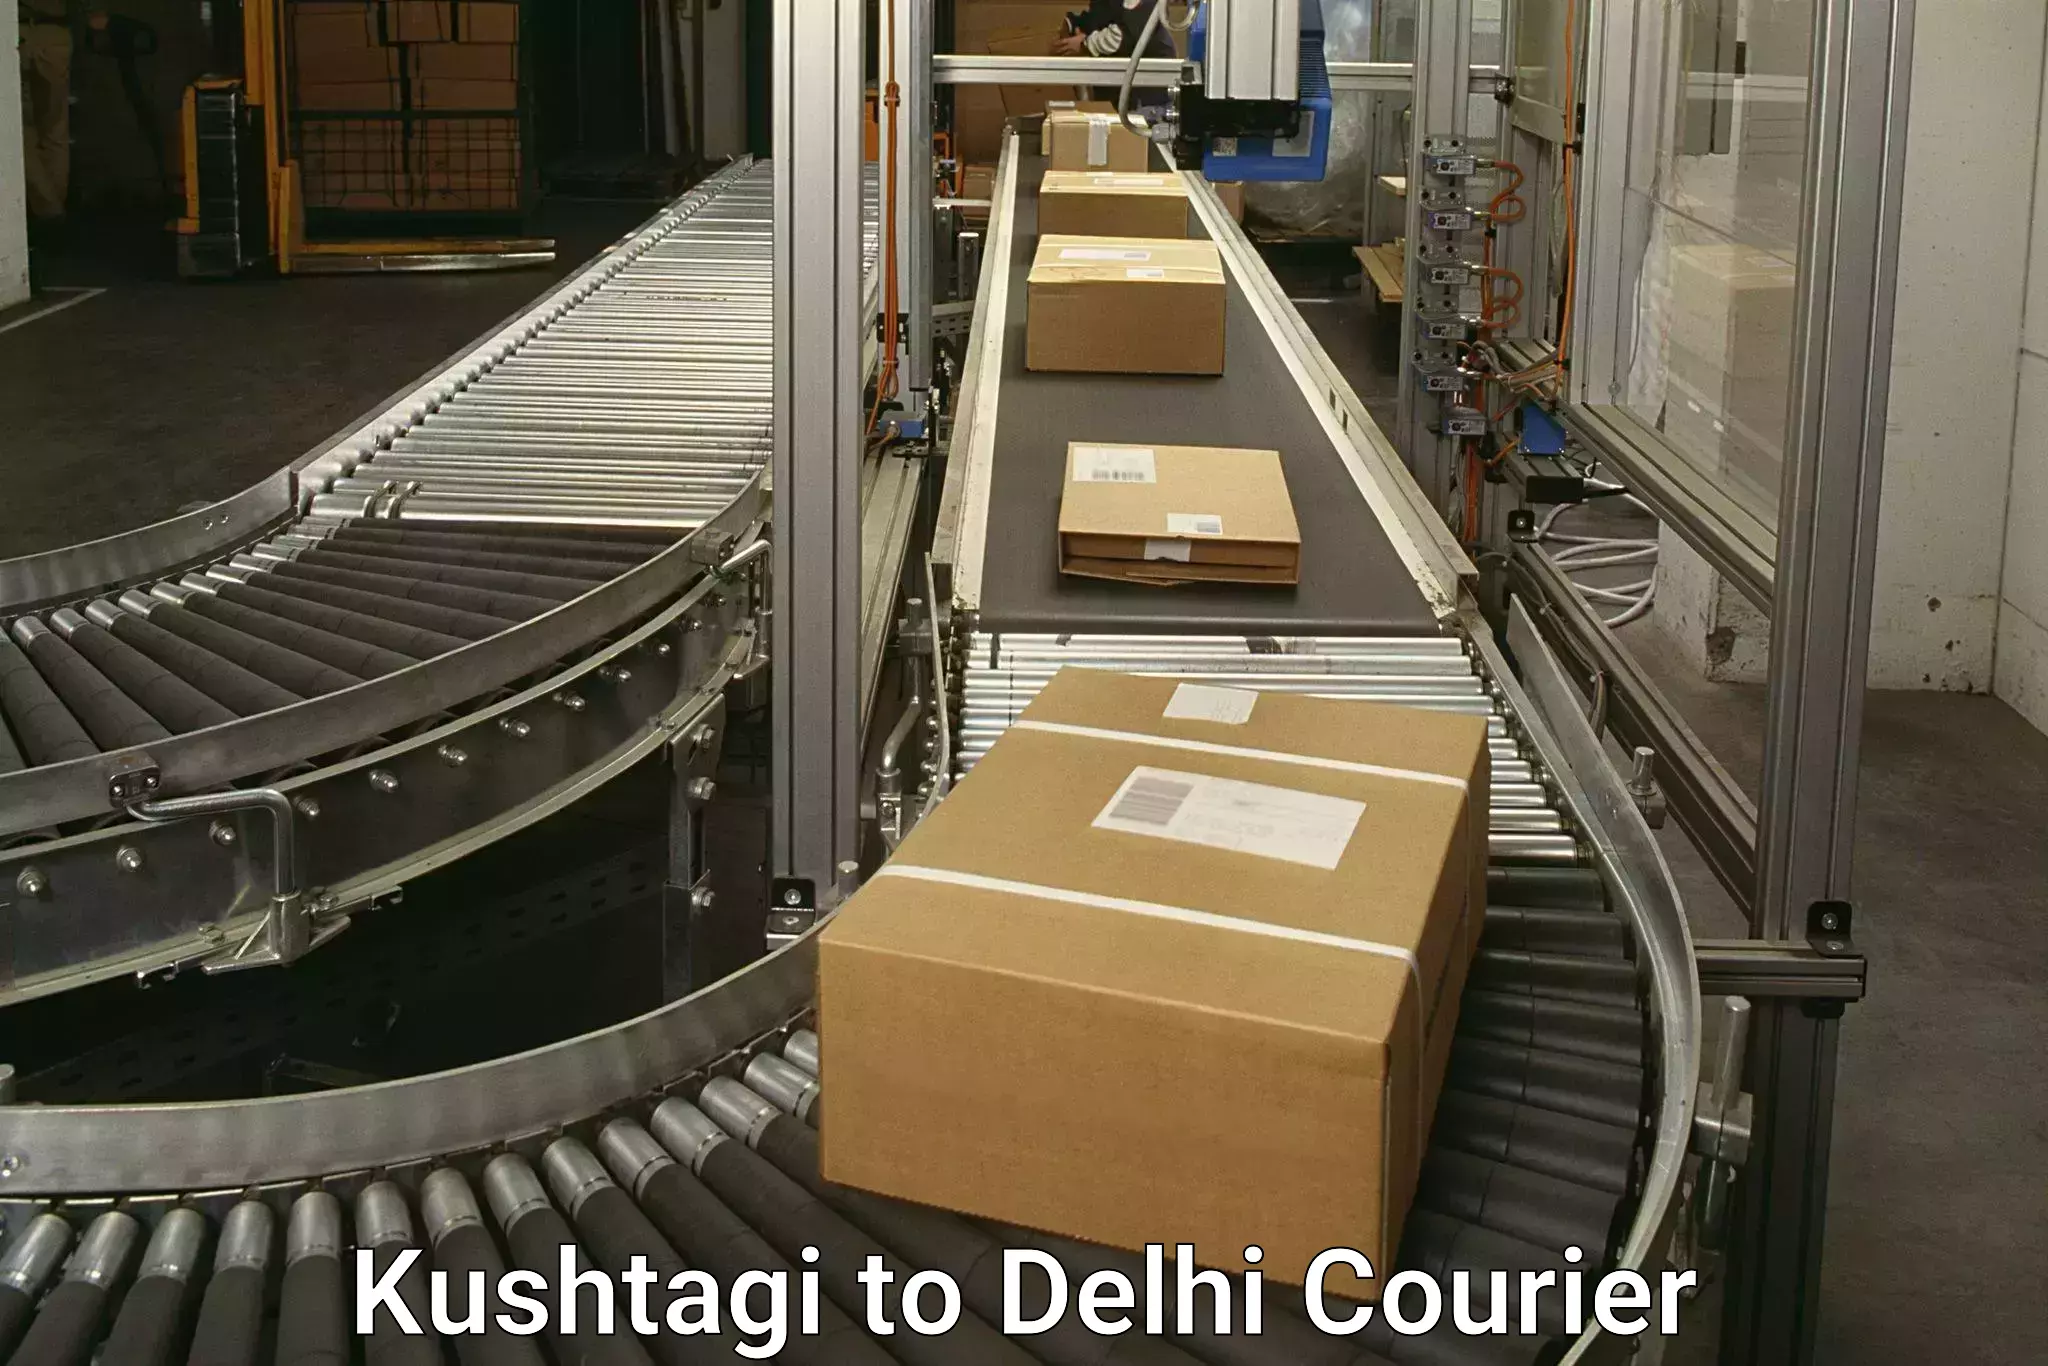 Cargo delivery service Kushtagi to NIT Delhi